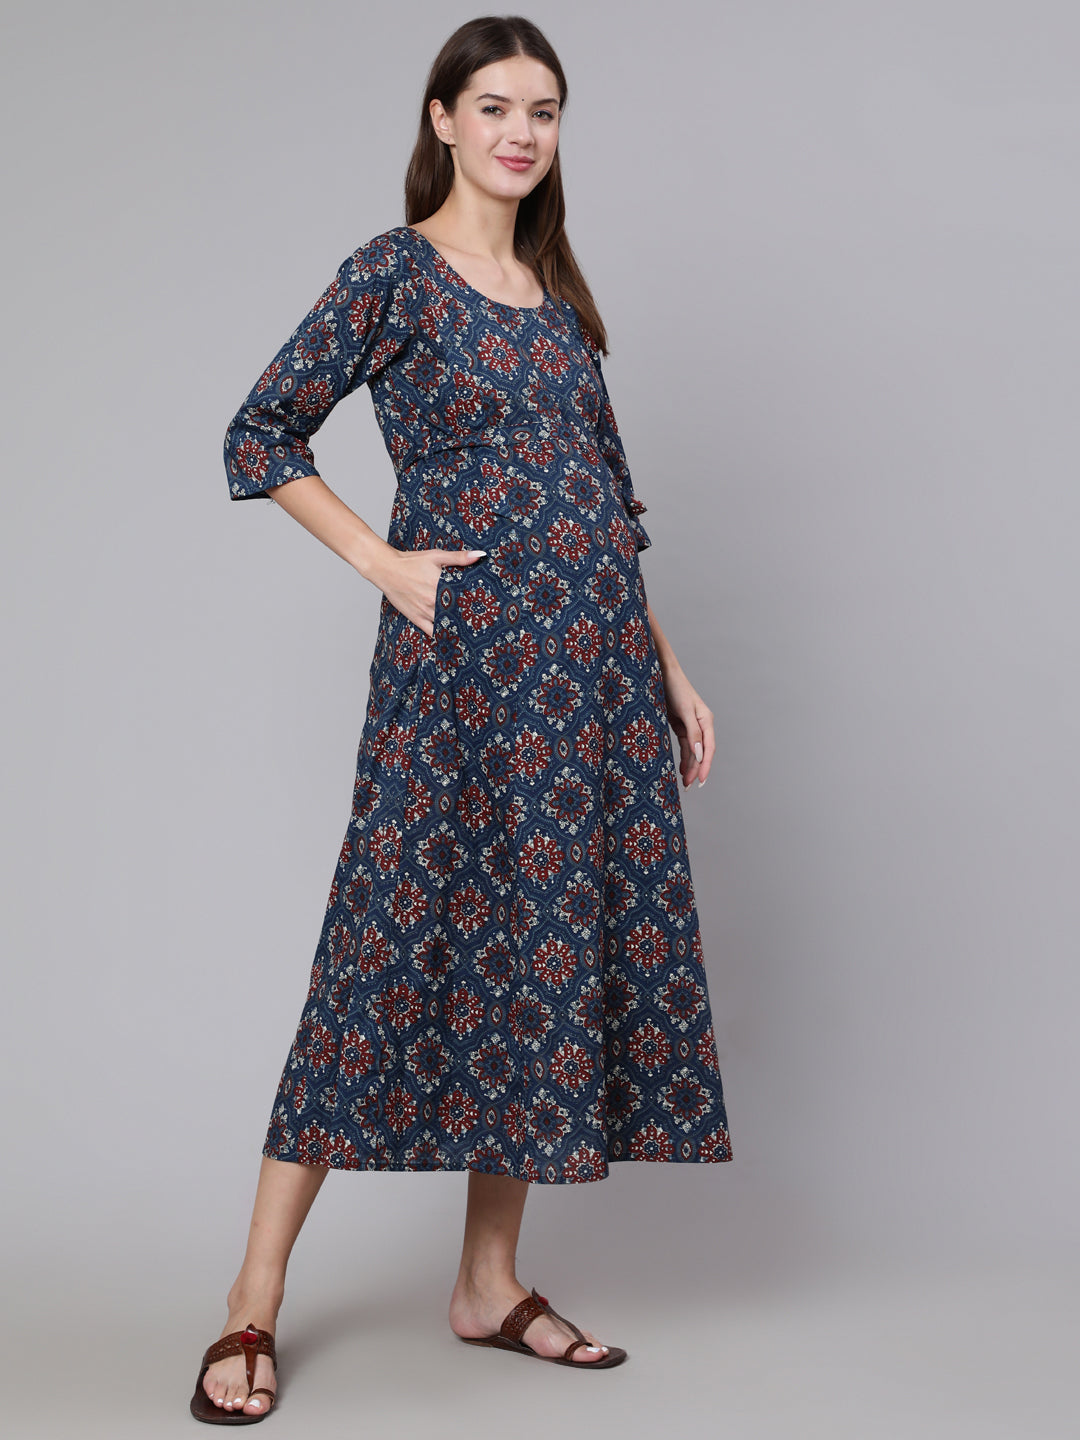 Women's Navy Blue Ethinc Printed Flared Maternity Dress - Nayo Clothing